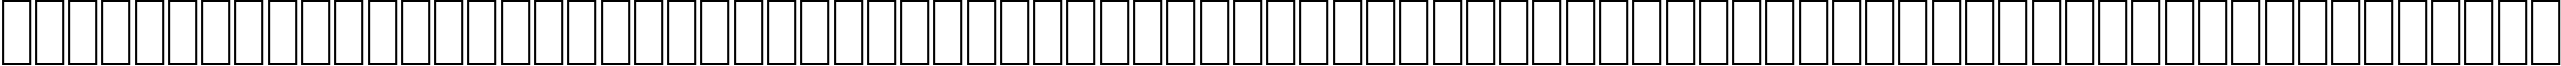 Пример написания английского алфавита шрифтом AGA Cairo Regular